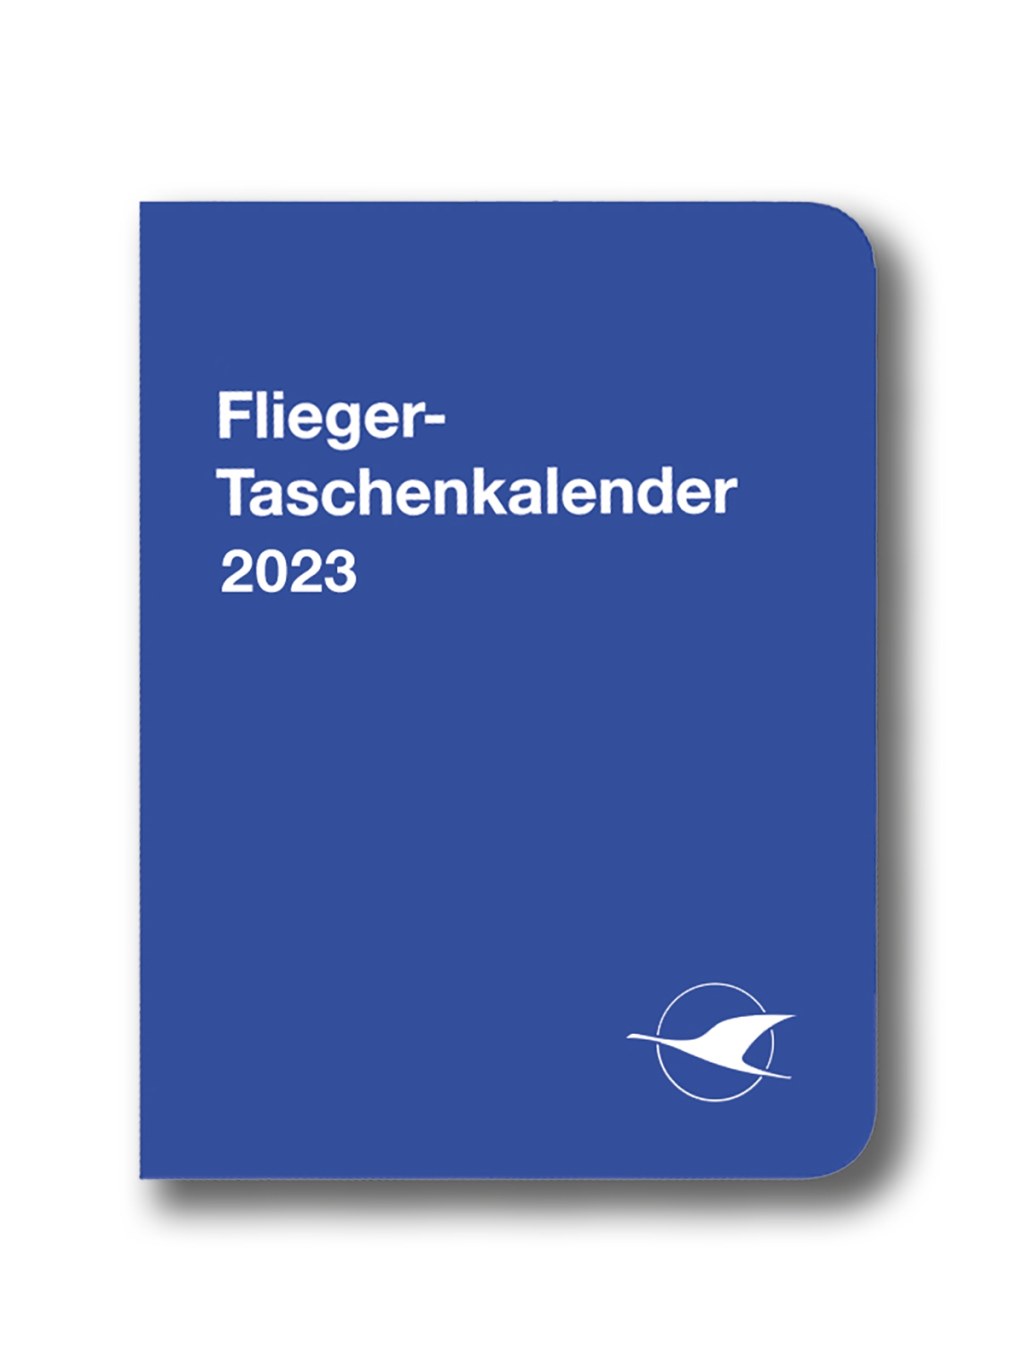 trip planner 131 500 - Flieger-Taschenkalender